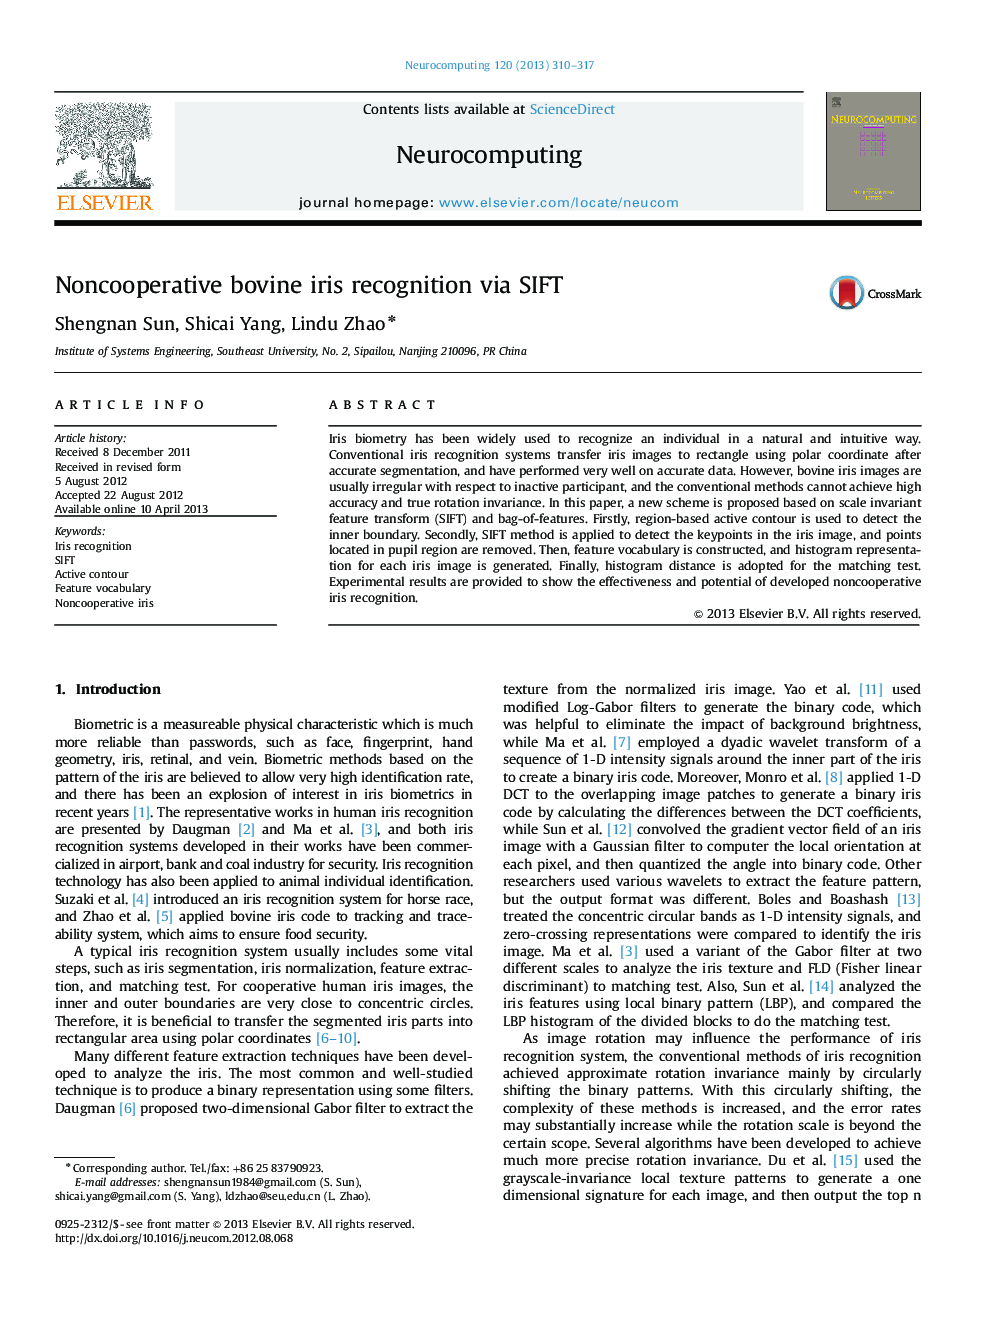 Noncooperative bovine iris recognition via SIFT